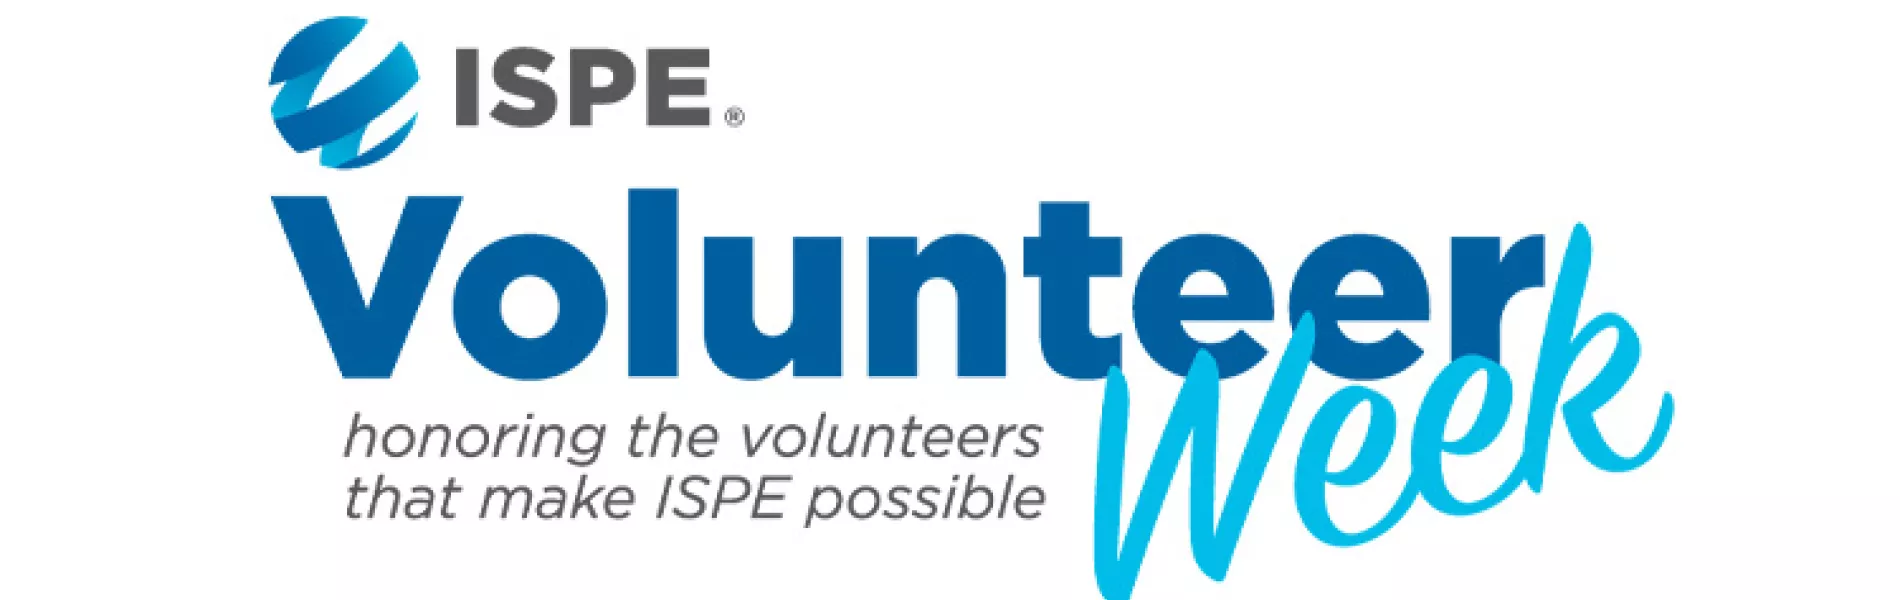 ISPE Volunteer week